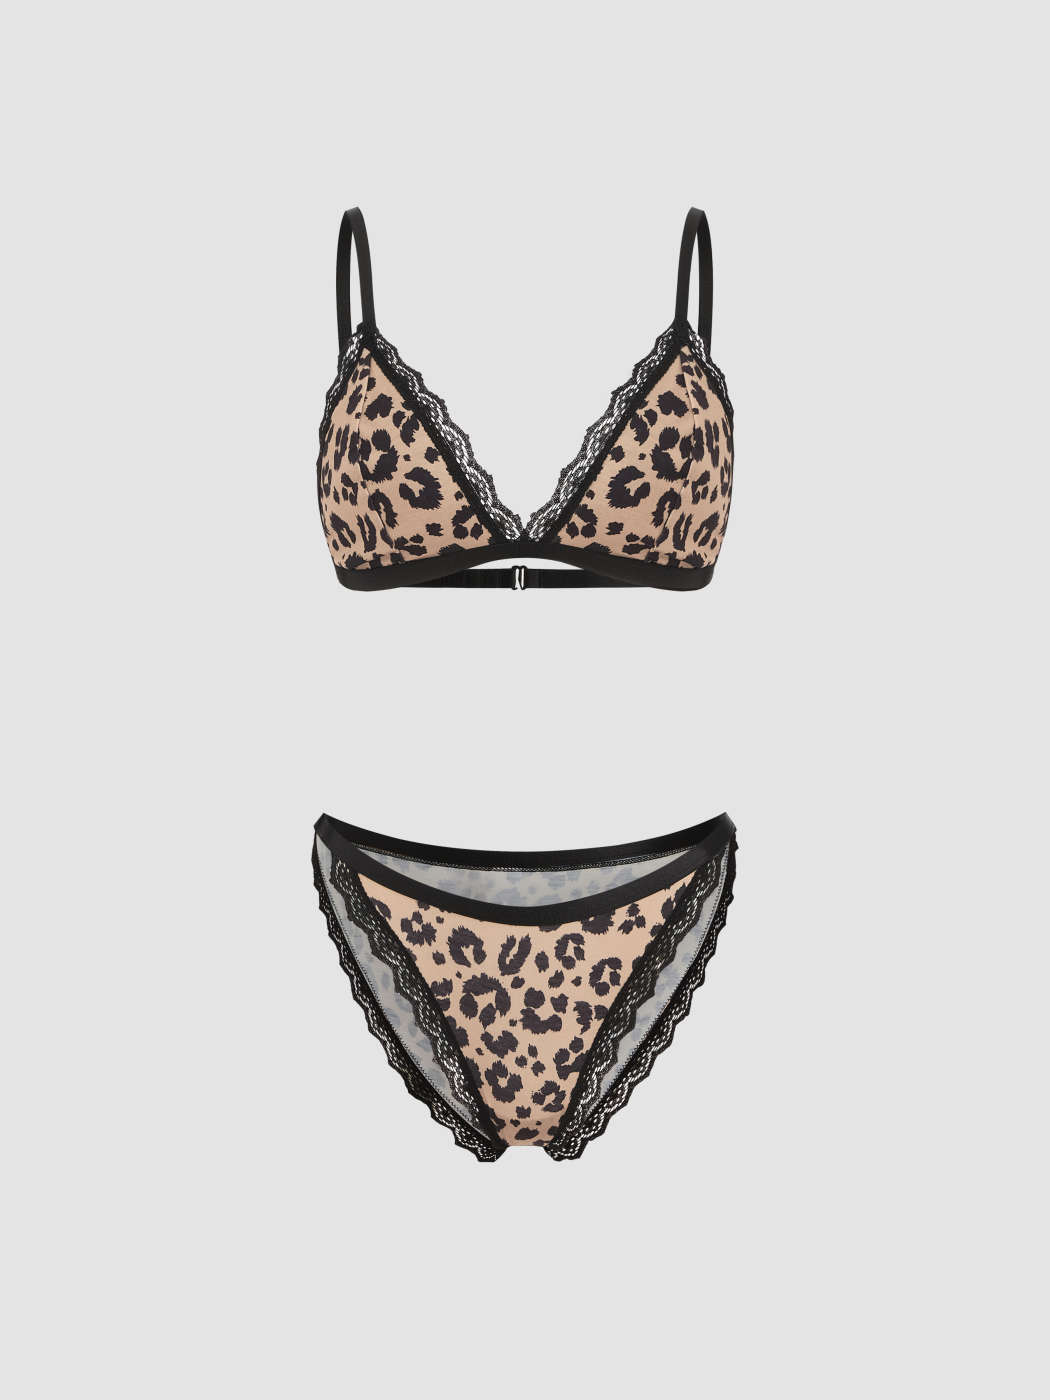 Leopard Print Mesh Patchwork Bralette Lingerie Set - Leopard & Lace  Australia